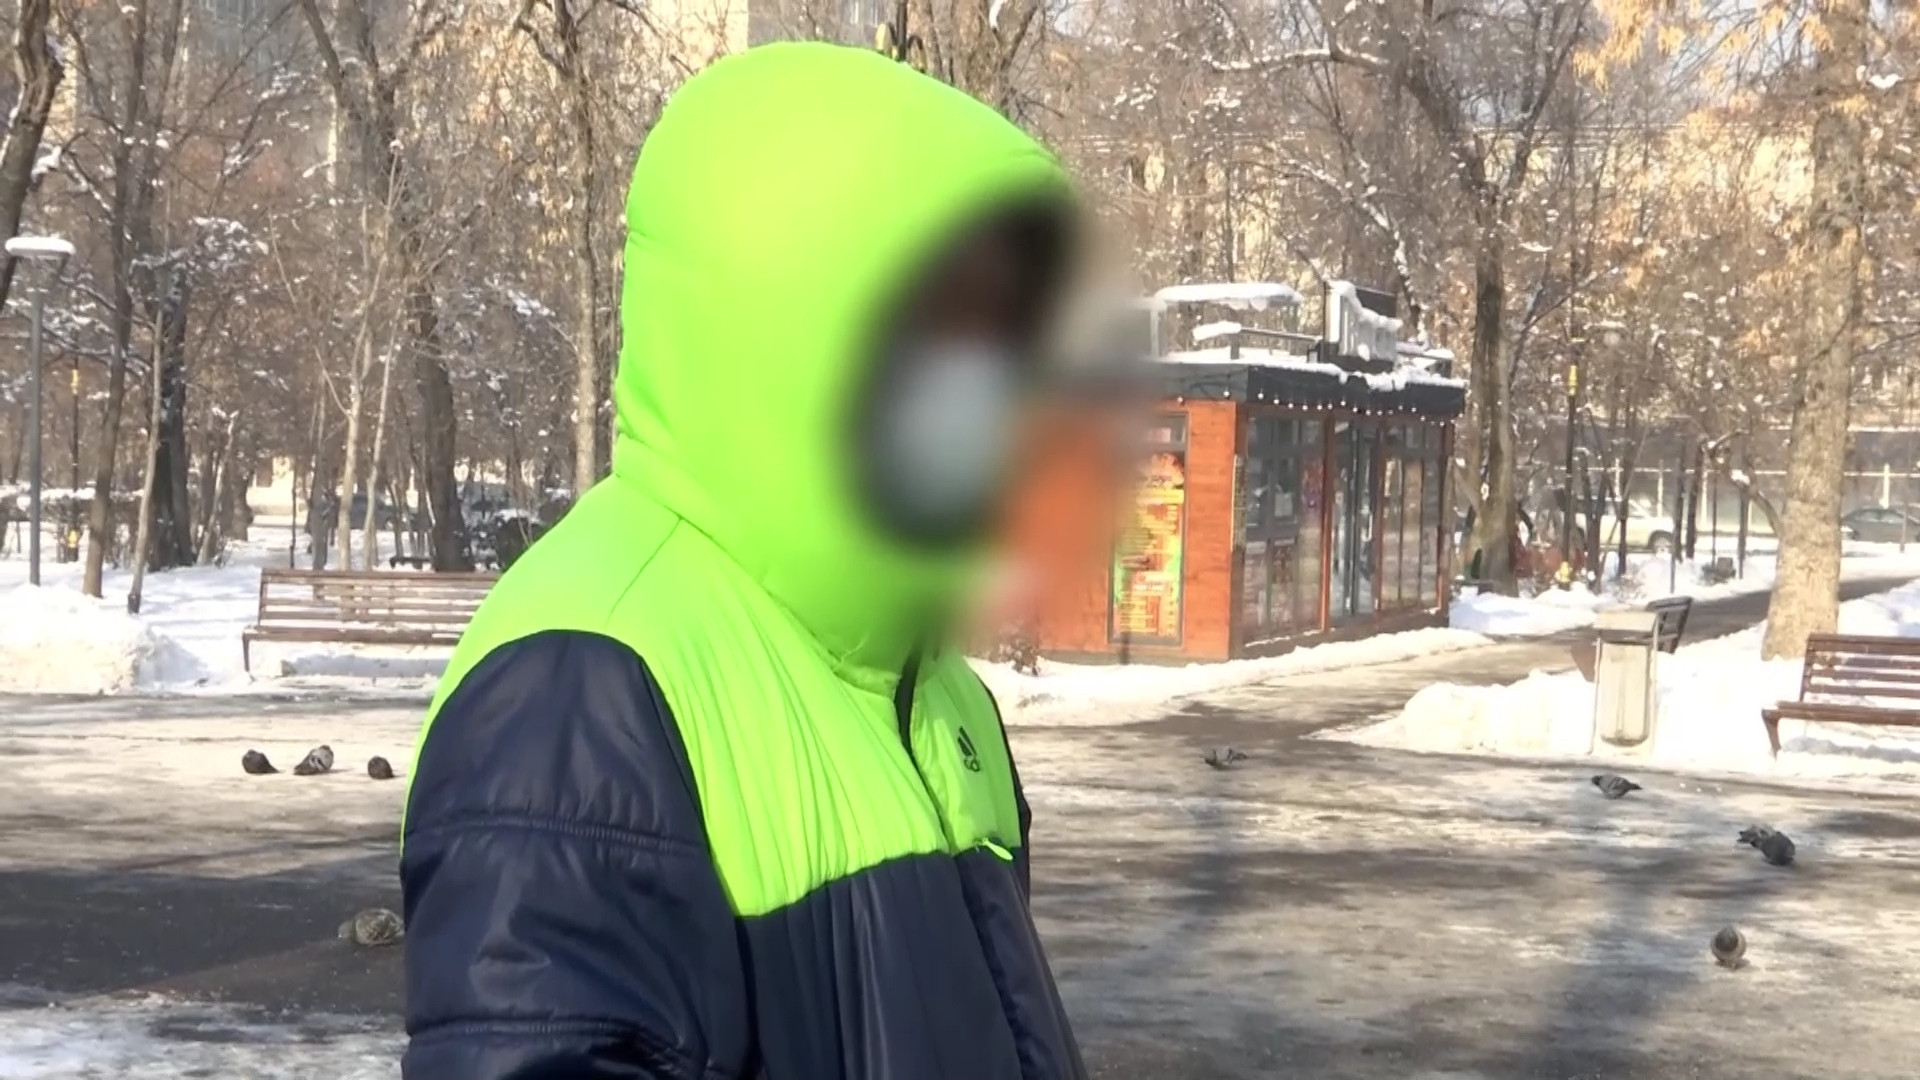 Житель Алматы рассказал, как его изнасиловали трое парней: 17 января 2023,  03:56 - новости на Tengrinews.kz